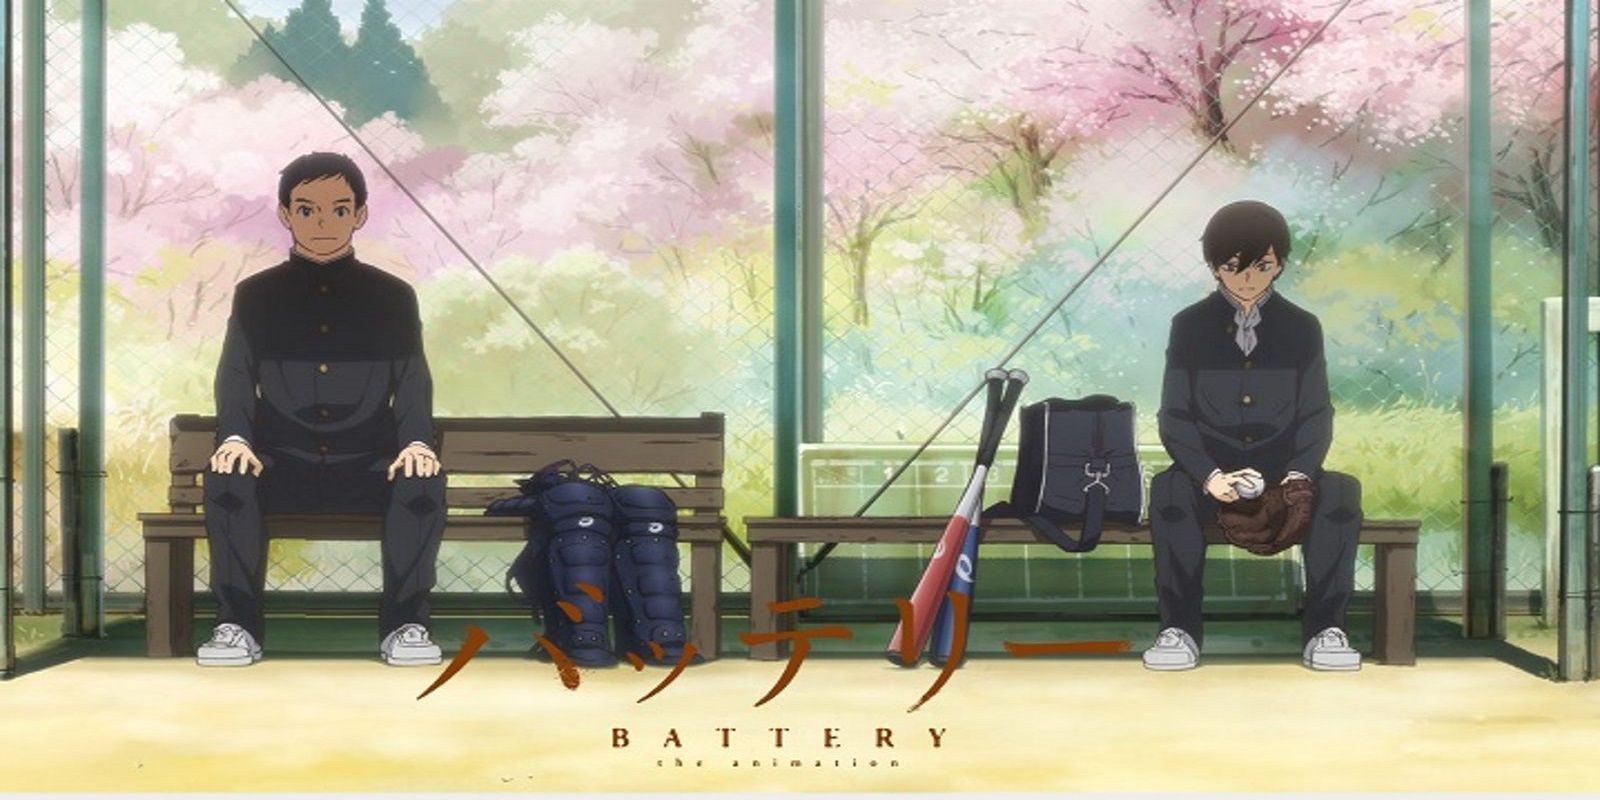 Boukyaku Battery』Teaser PV ／ “Oblivion Battery” Teaser Trailer : r/anime